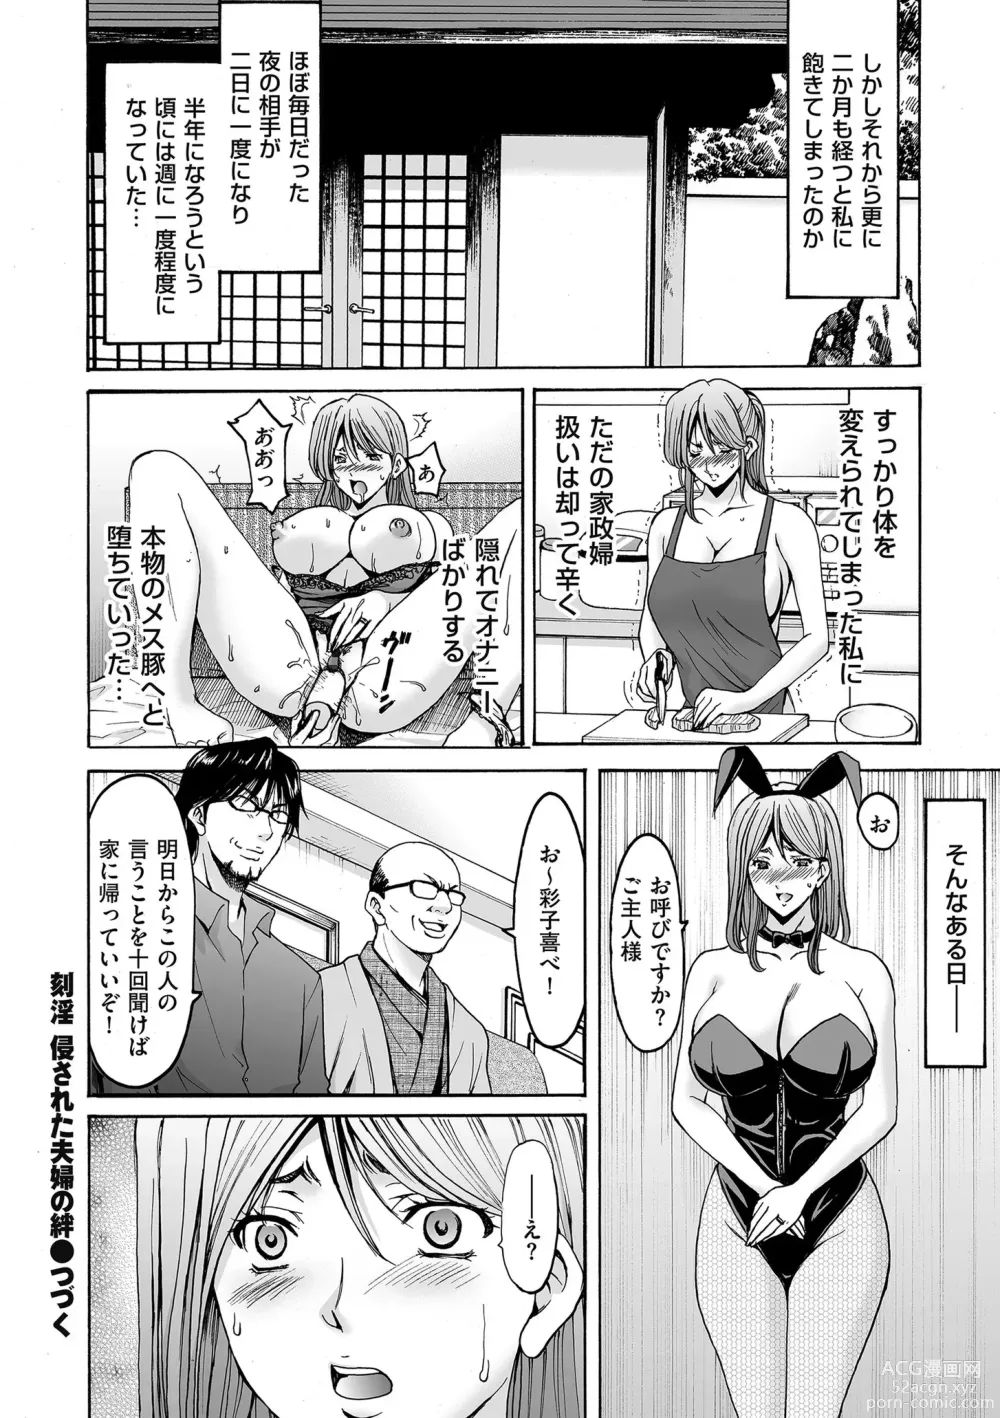 Page 67 of manga Kouin okasareta huuhu no kizuna Ch.1-3